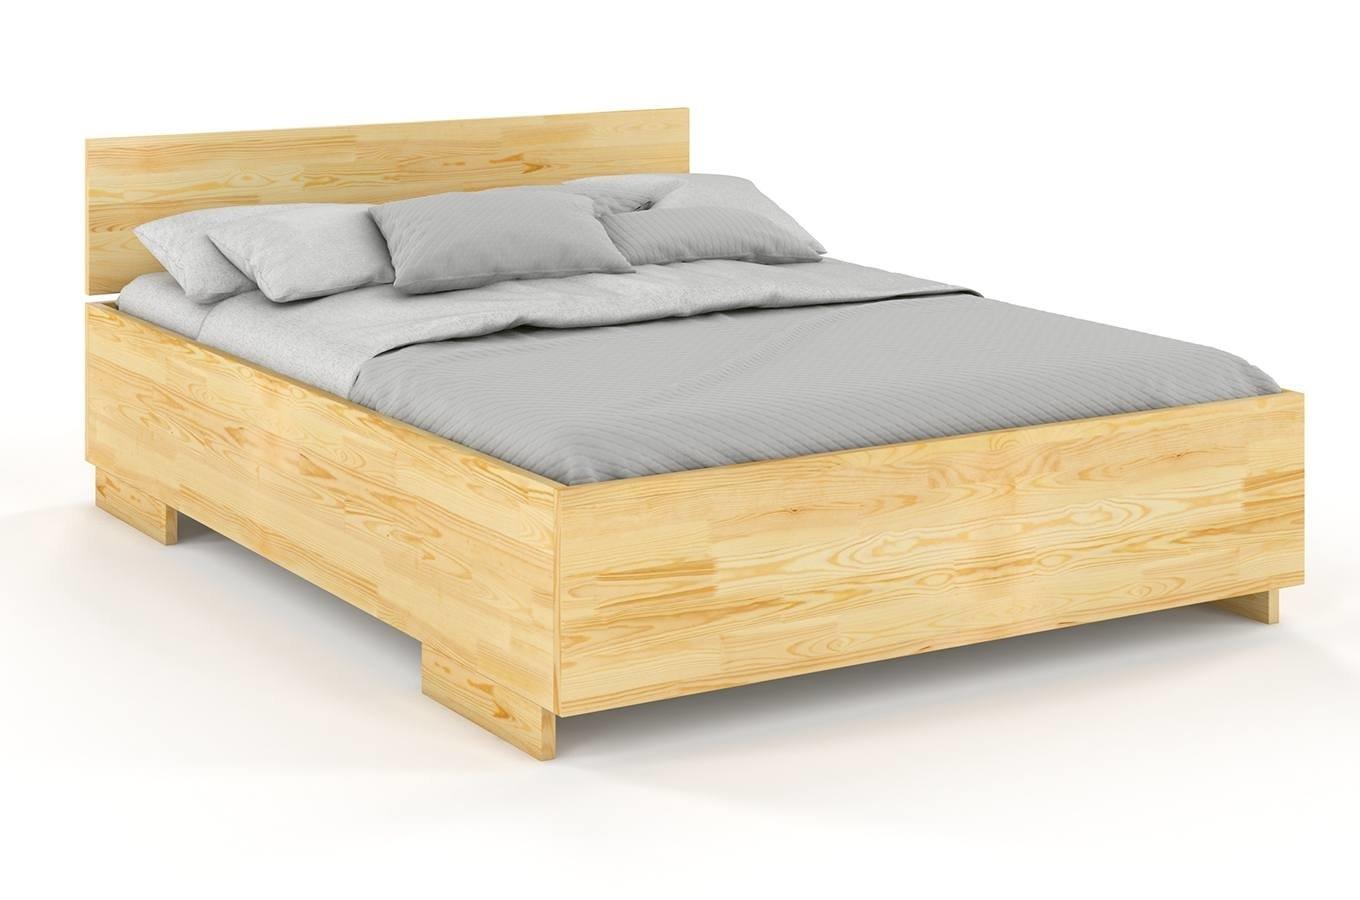 Łóżko drewniane sosnowe Visby Bergman High&Long / 120x220 cm, kolor naturalny